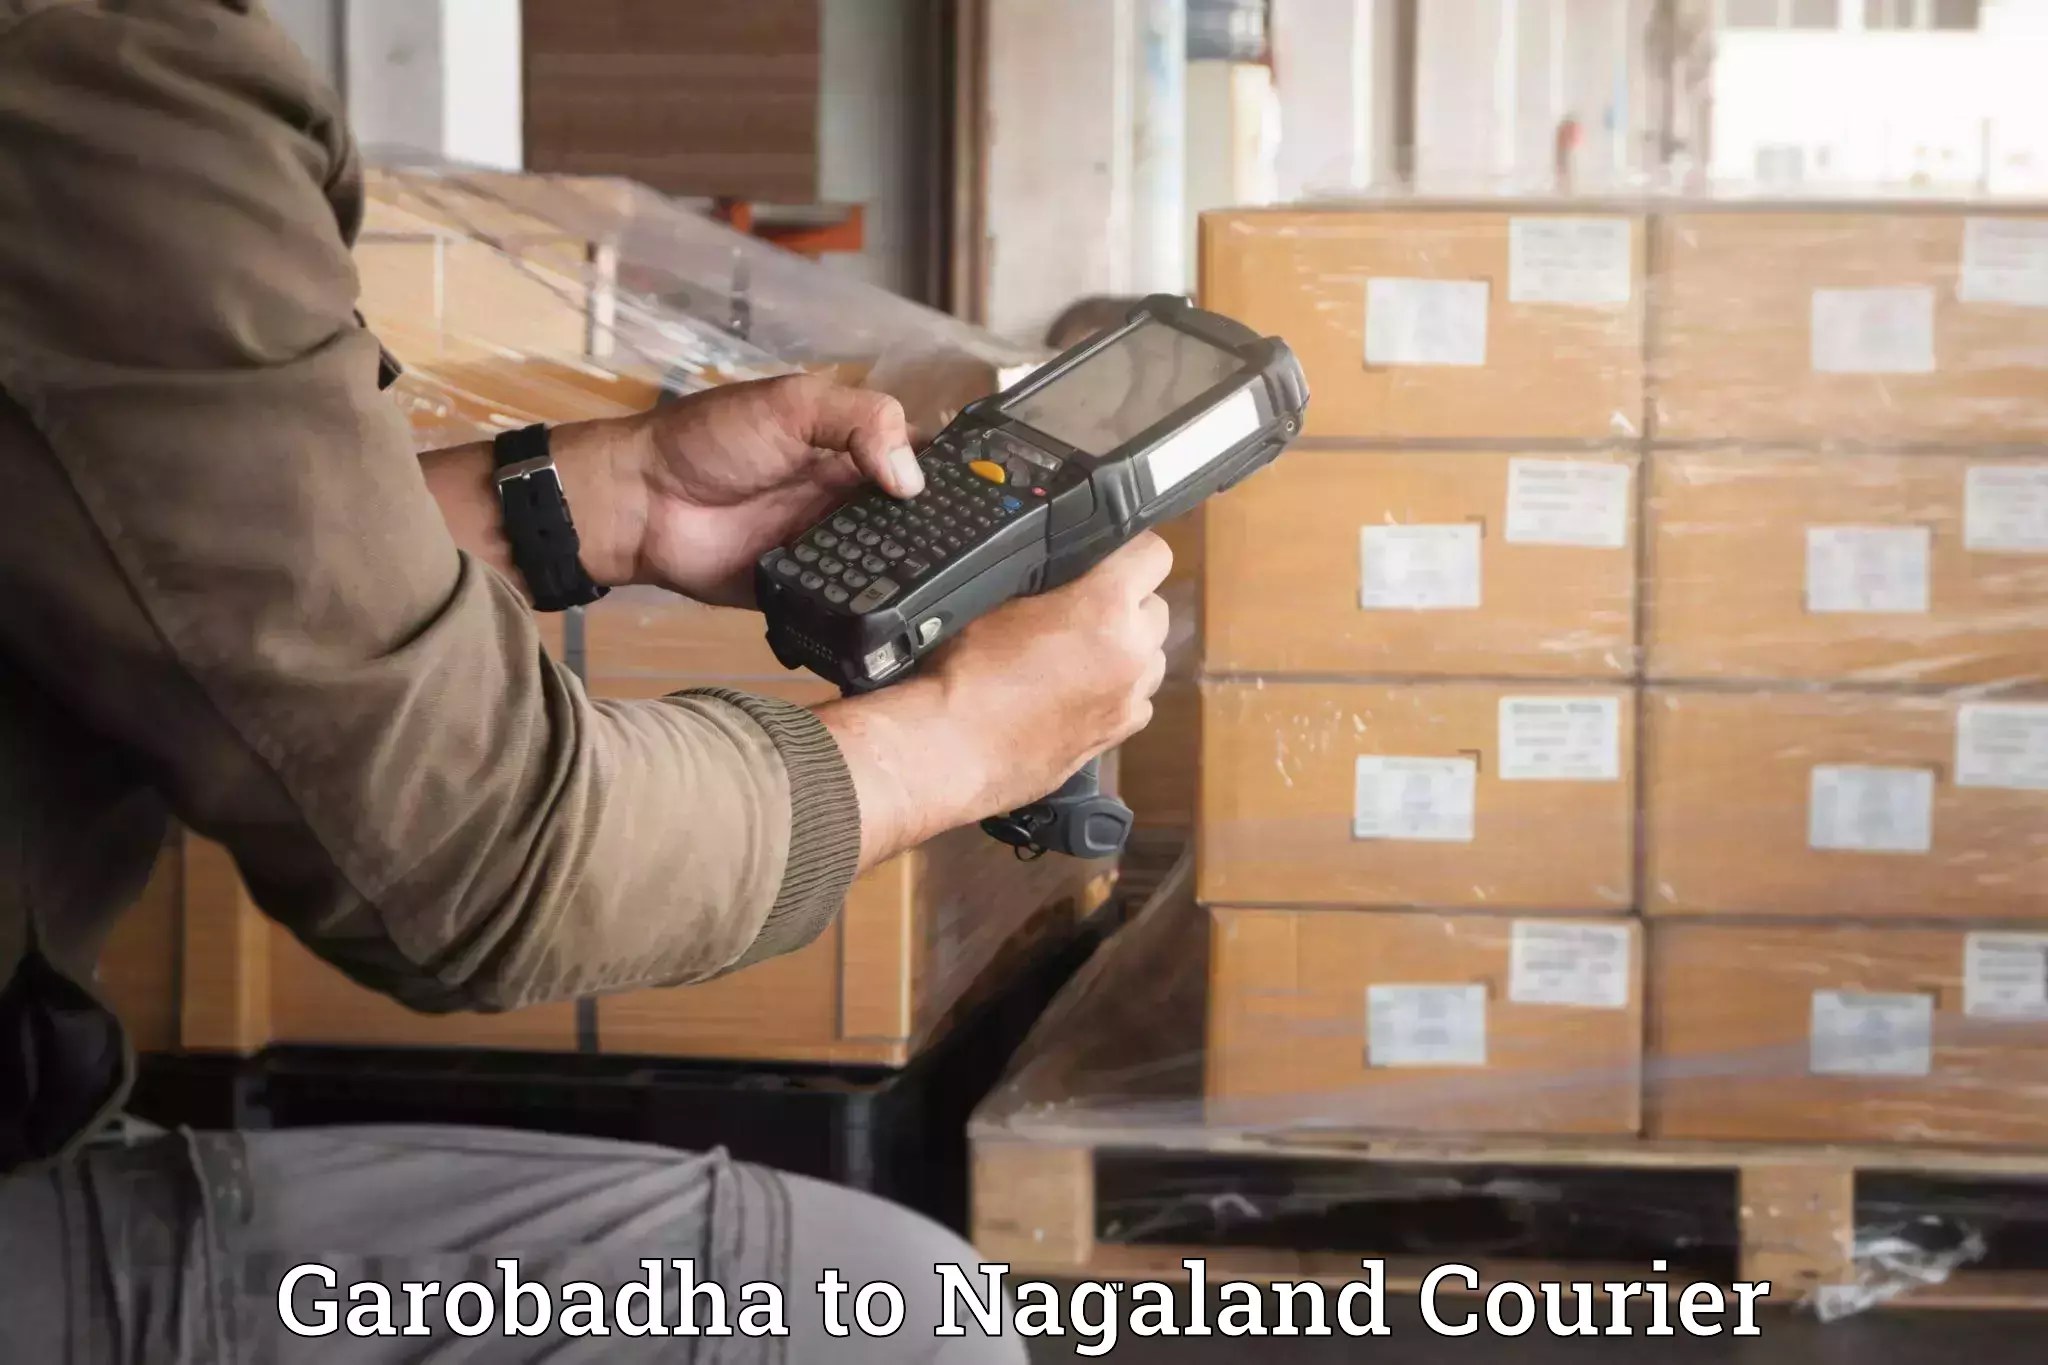 Efficient packing and moving Garobadha to Nagaland